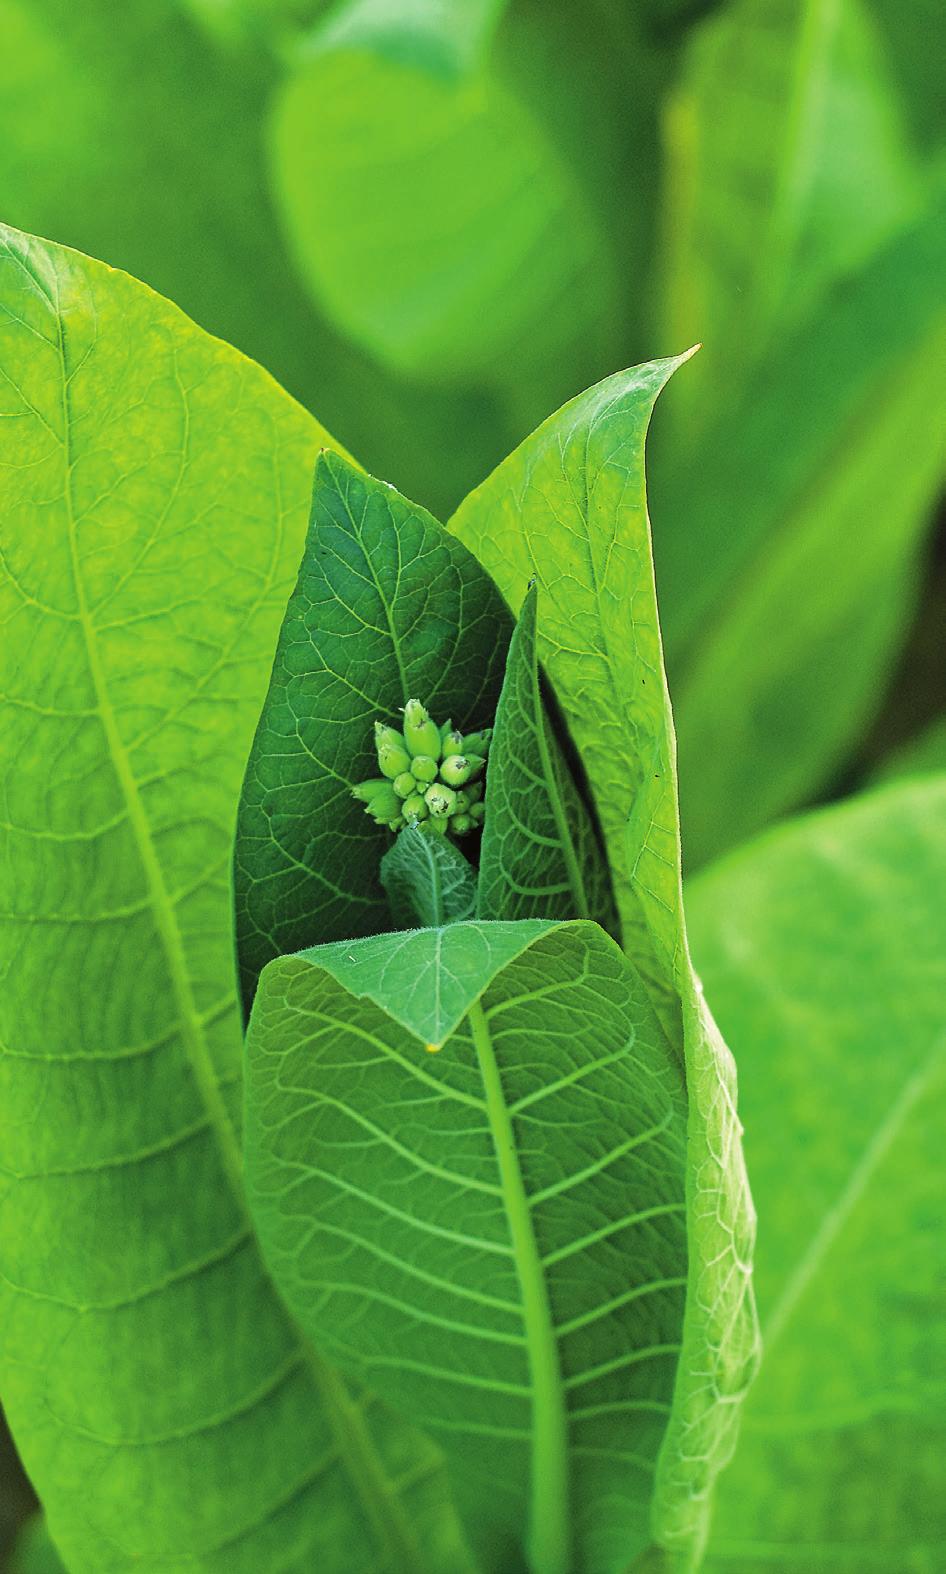 TOBAK Tobak är en växt, tobaksplantan, och det finns cirka 100 olika arter. Tobaksplantan är släkt med potatisväxten.